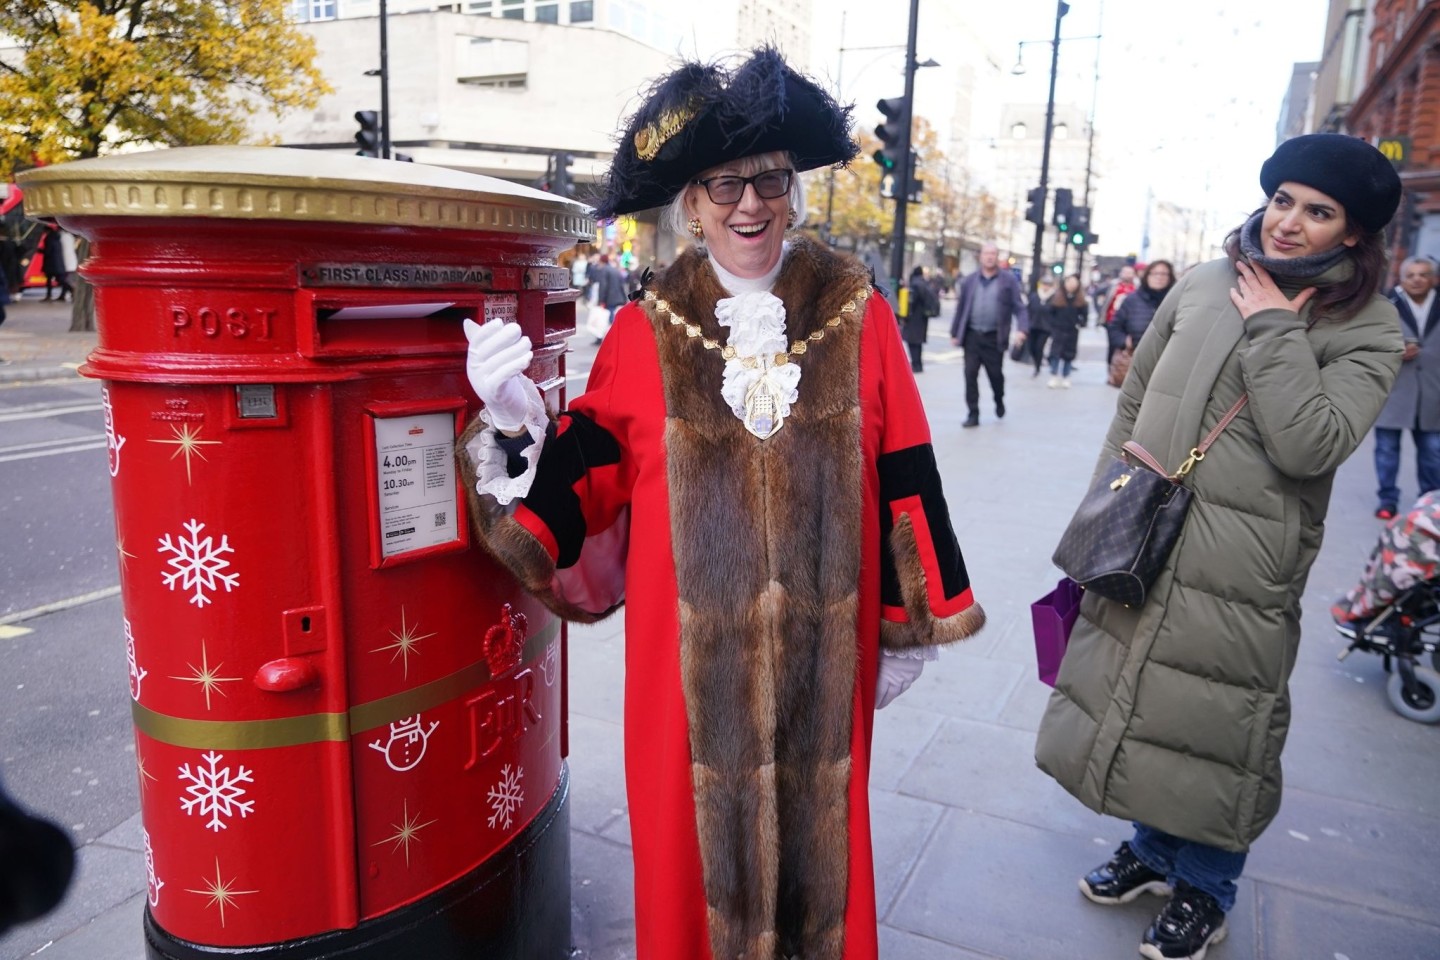 «Es gibt nichts Besseres, als Weihnachtskarten an Freunde und Familie zu schicken und ein bisschen festliche Freude zu versprühen», sagt die Londoner Bezirksrätin Patricia McAllister.